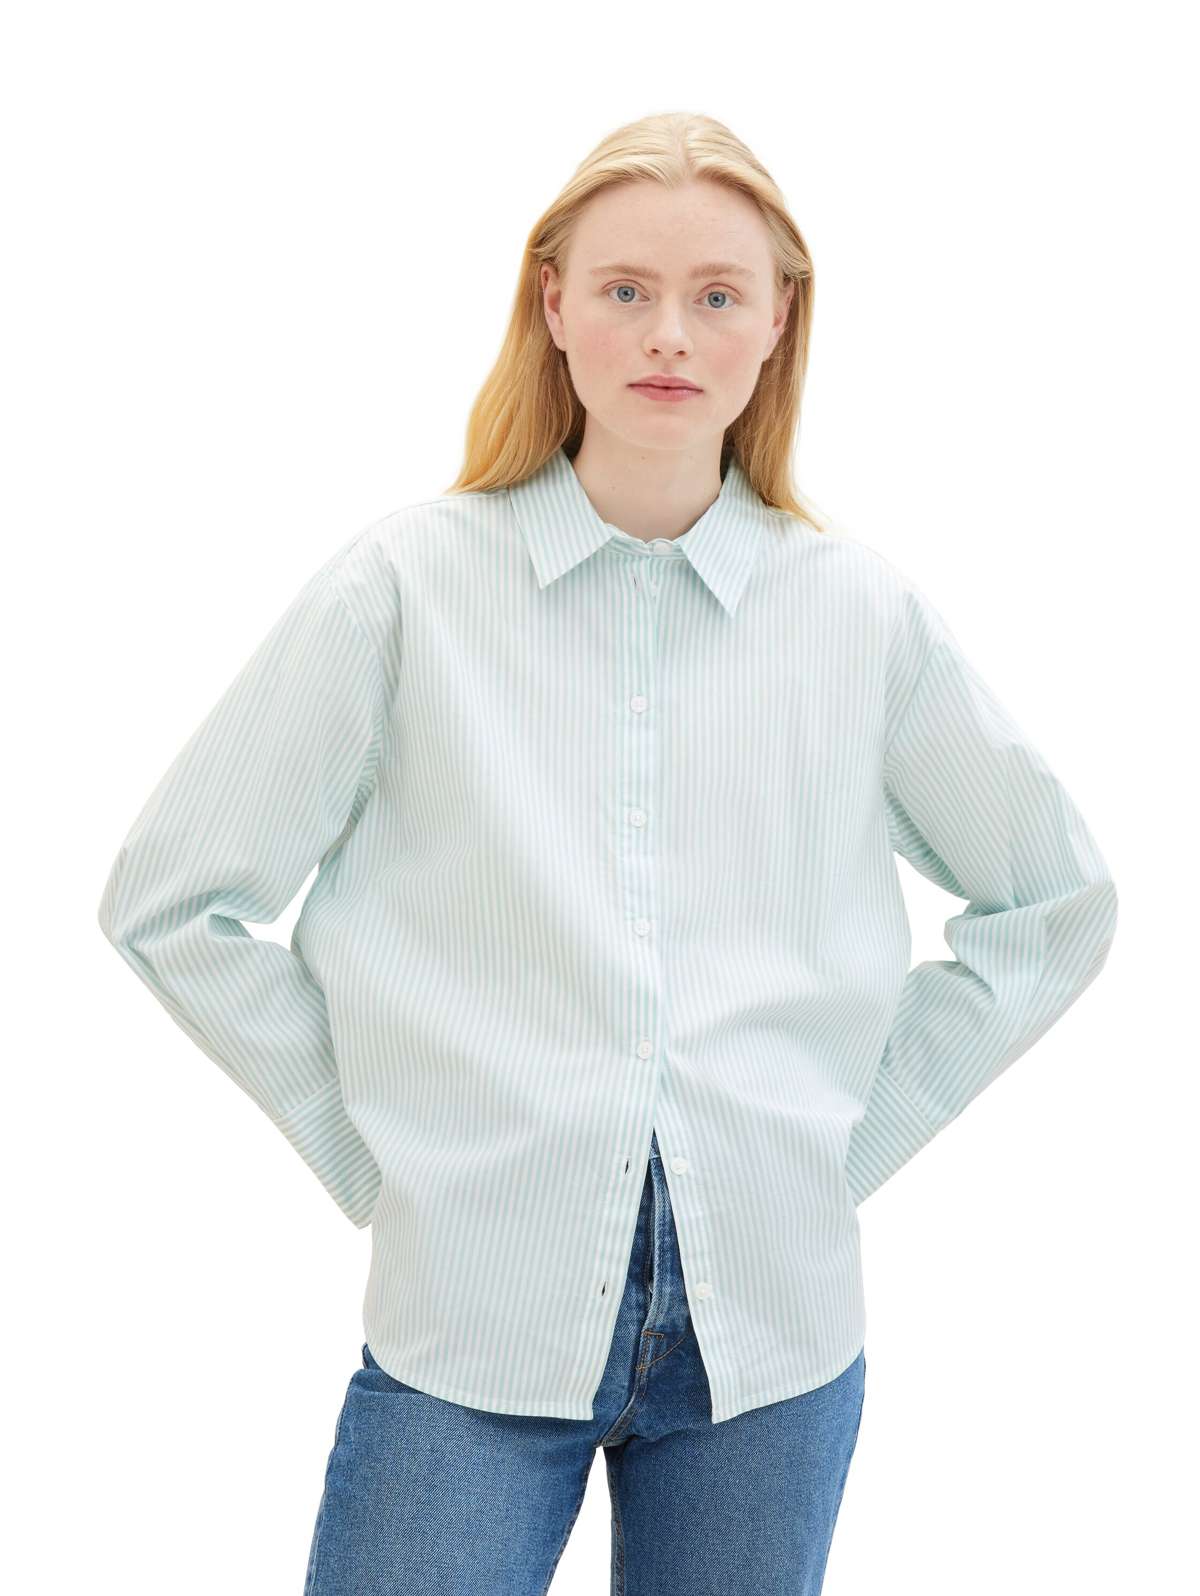 Блузка-рубашка в полоску, на эластичной ткани.